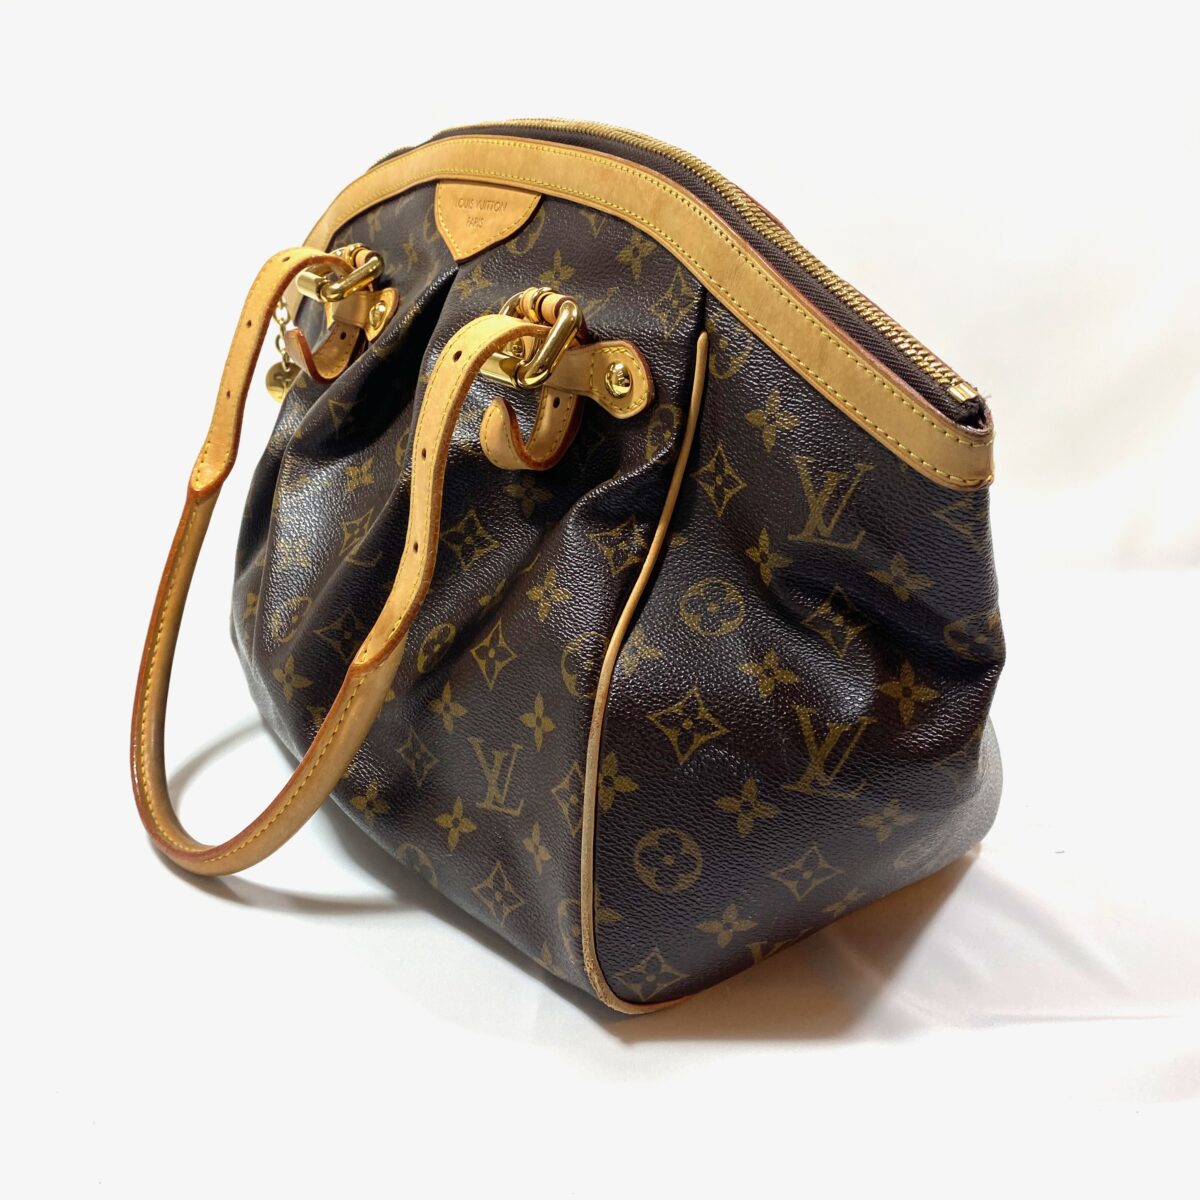 Louis Vuitton vintage bags väskor